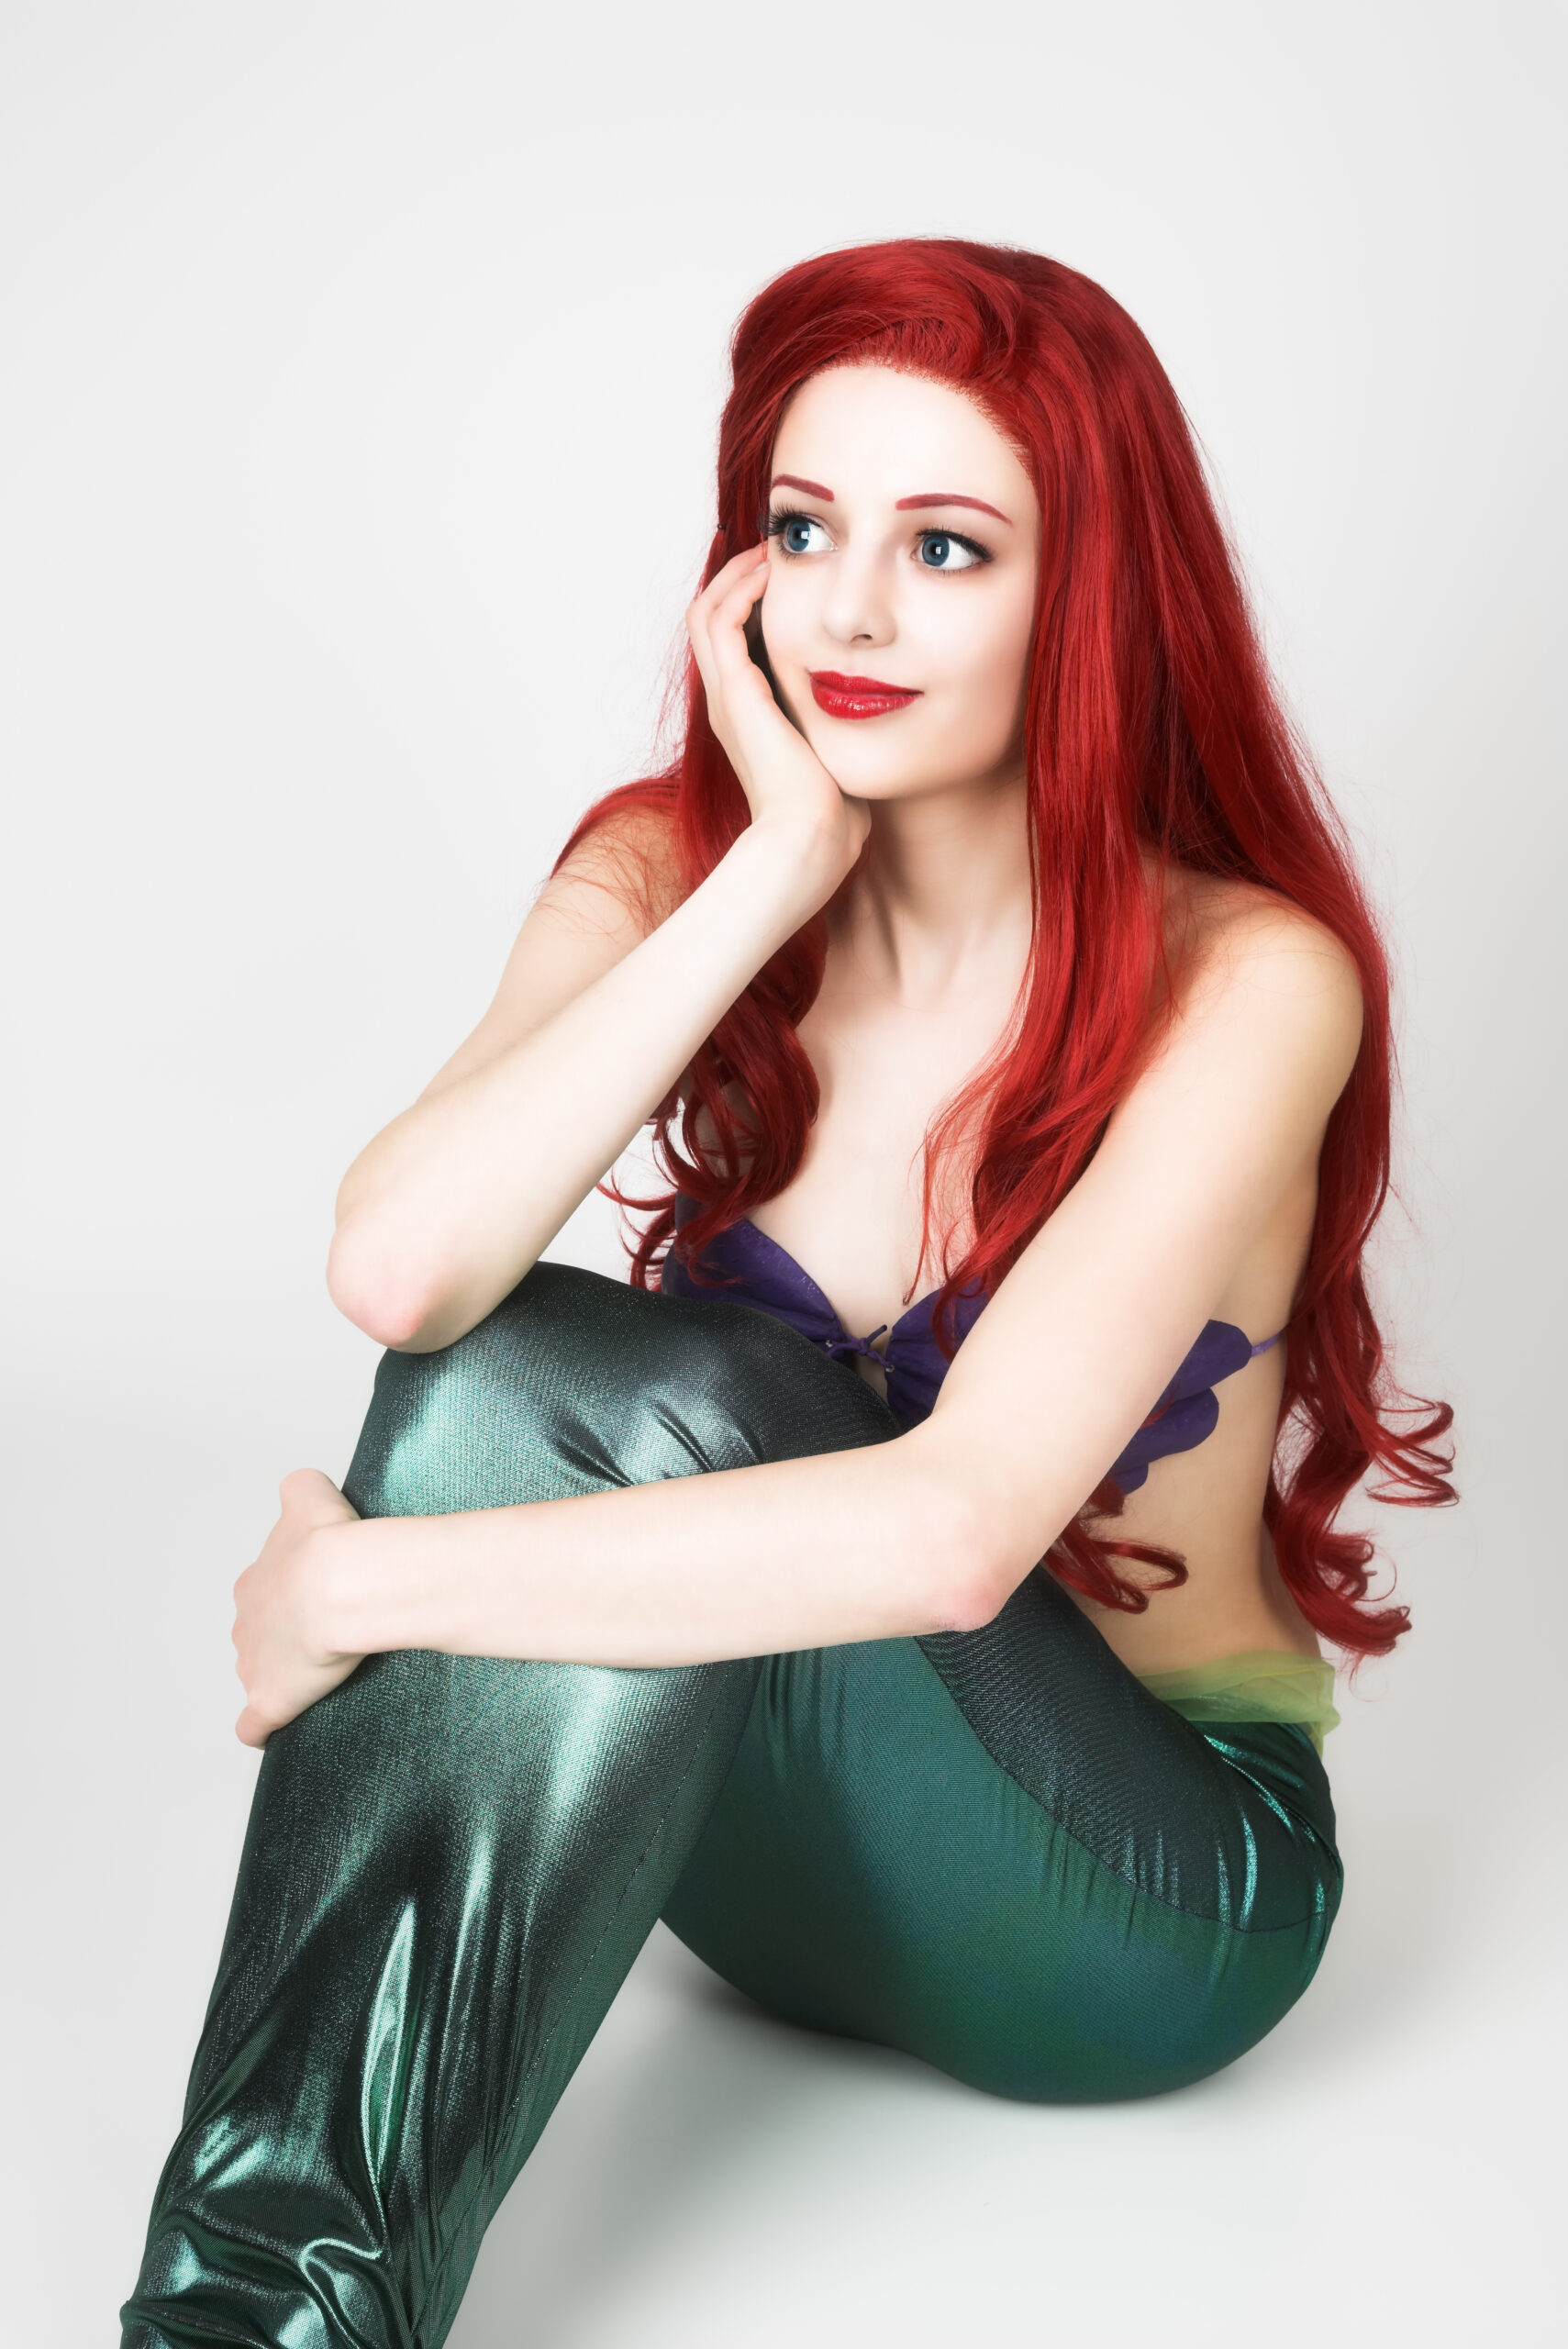 MidoriCosplay – Arielle [Mermaid] – Arielle die Meerjungfrau